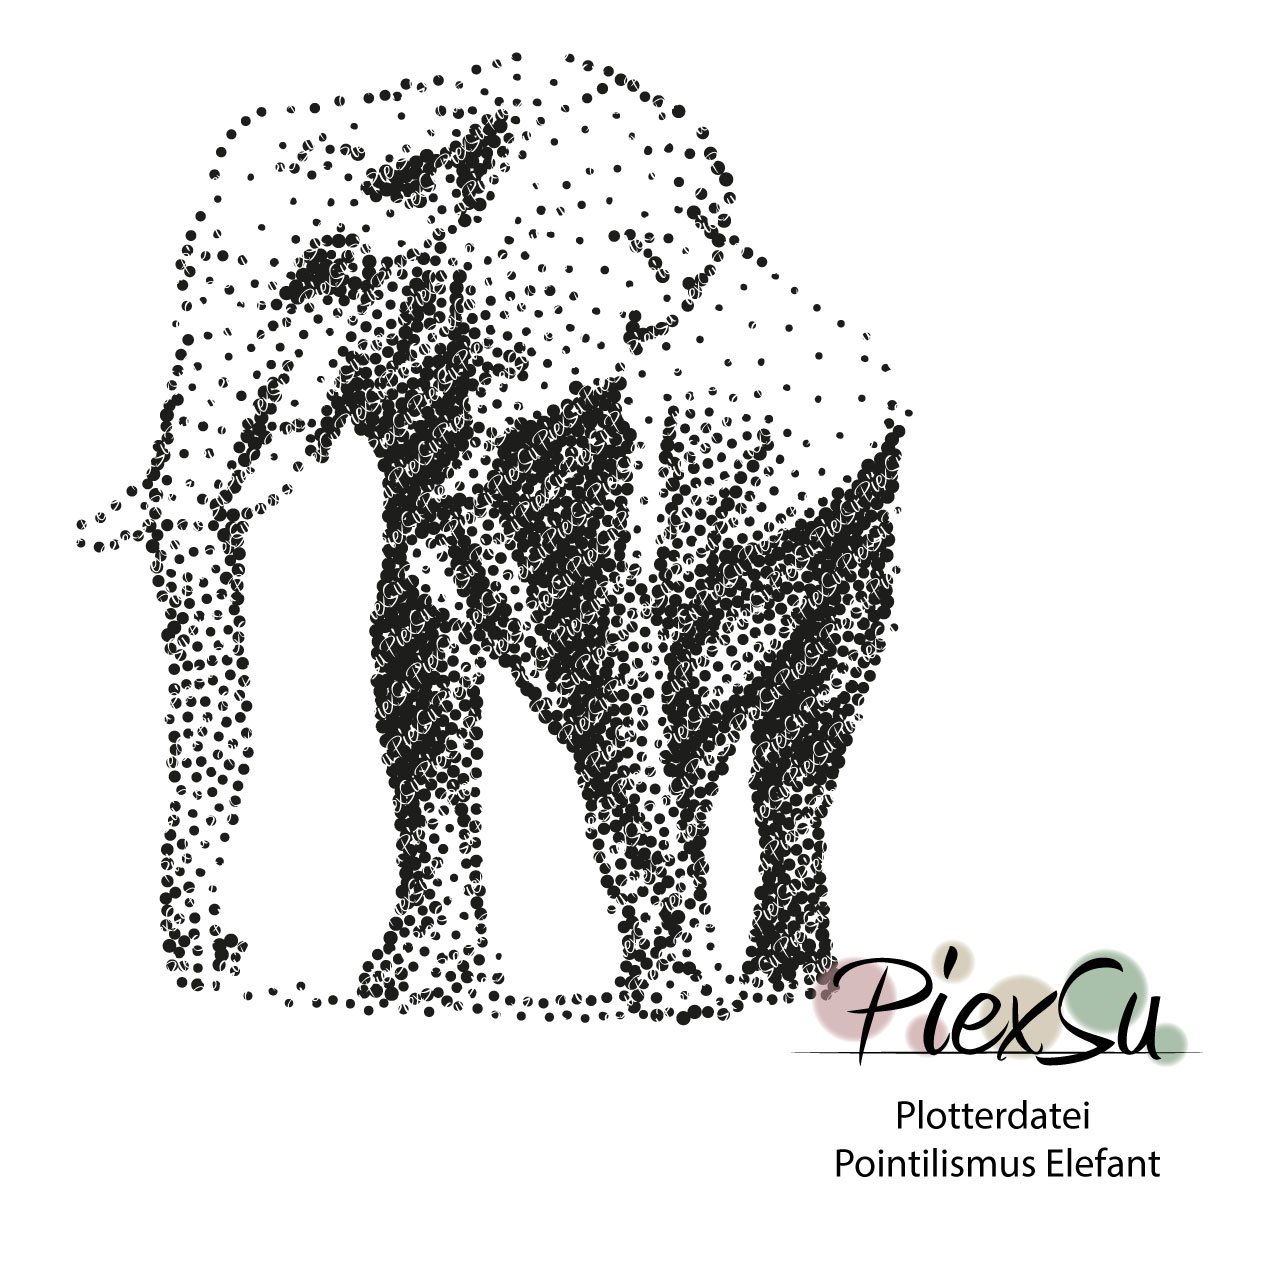 PiexSu-Plotterdatei-Pointilismus-Elefant-plotten-dxf-svg-Titelbild